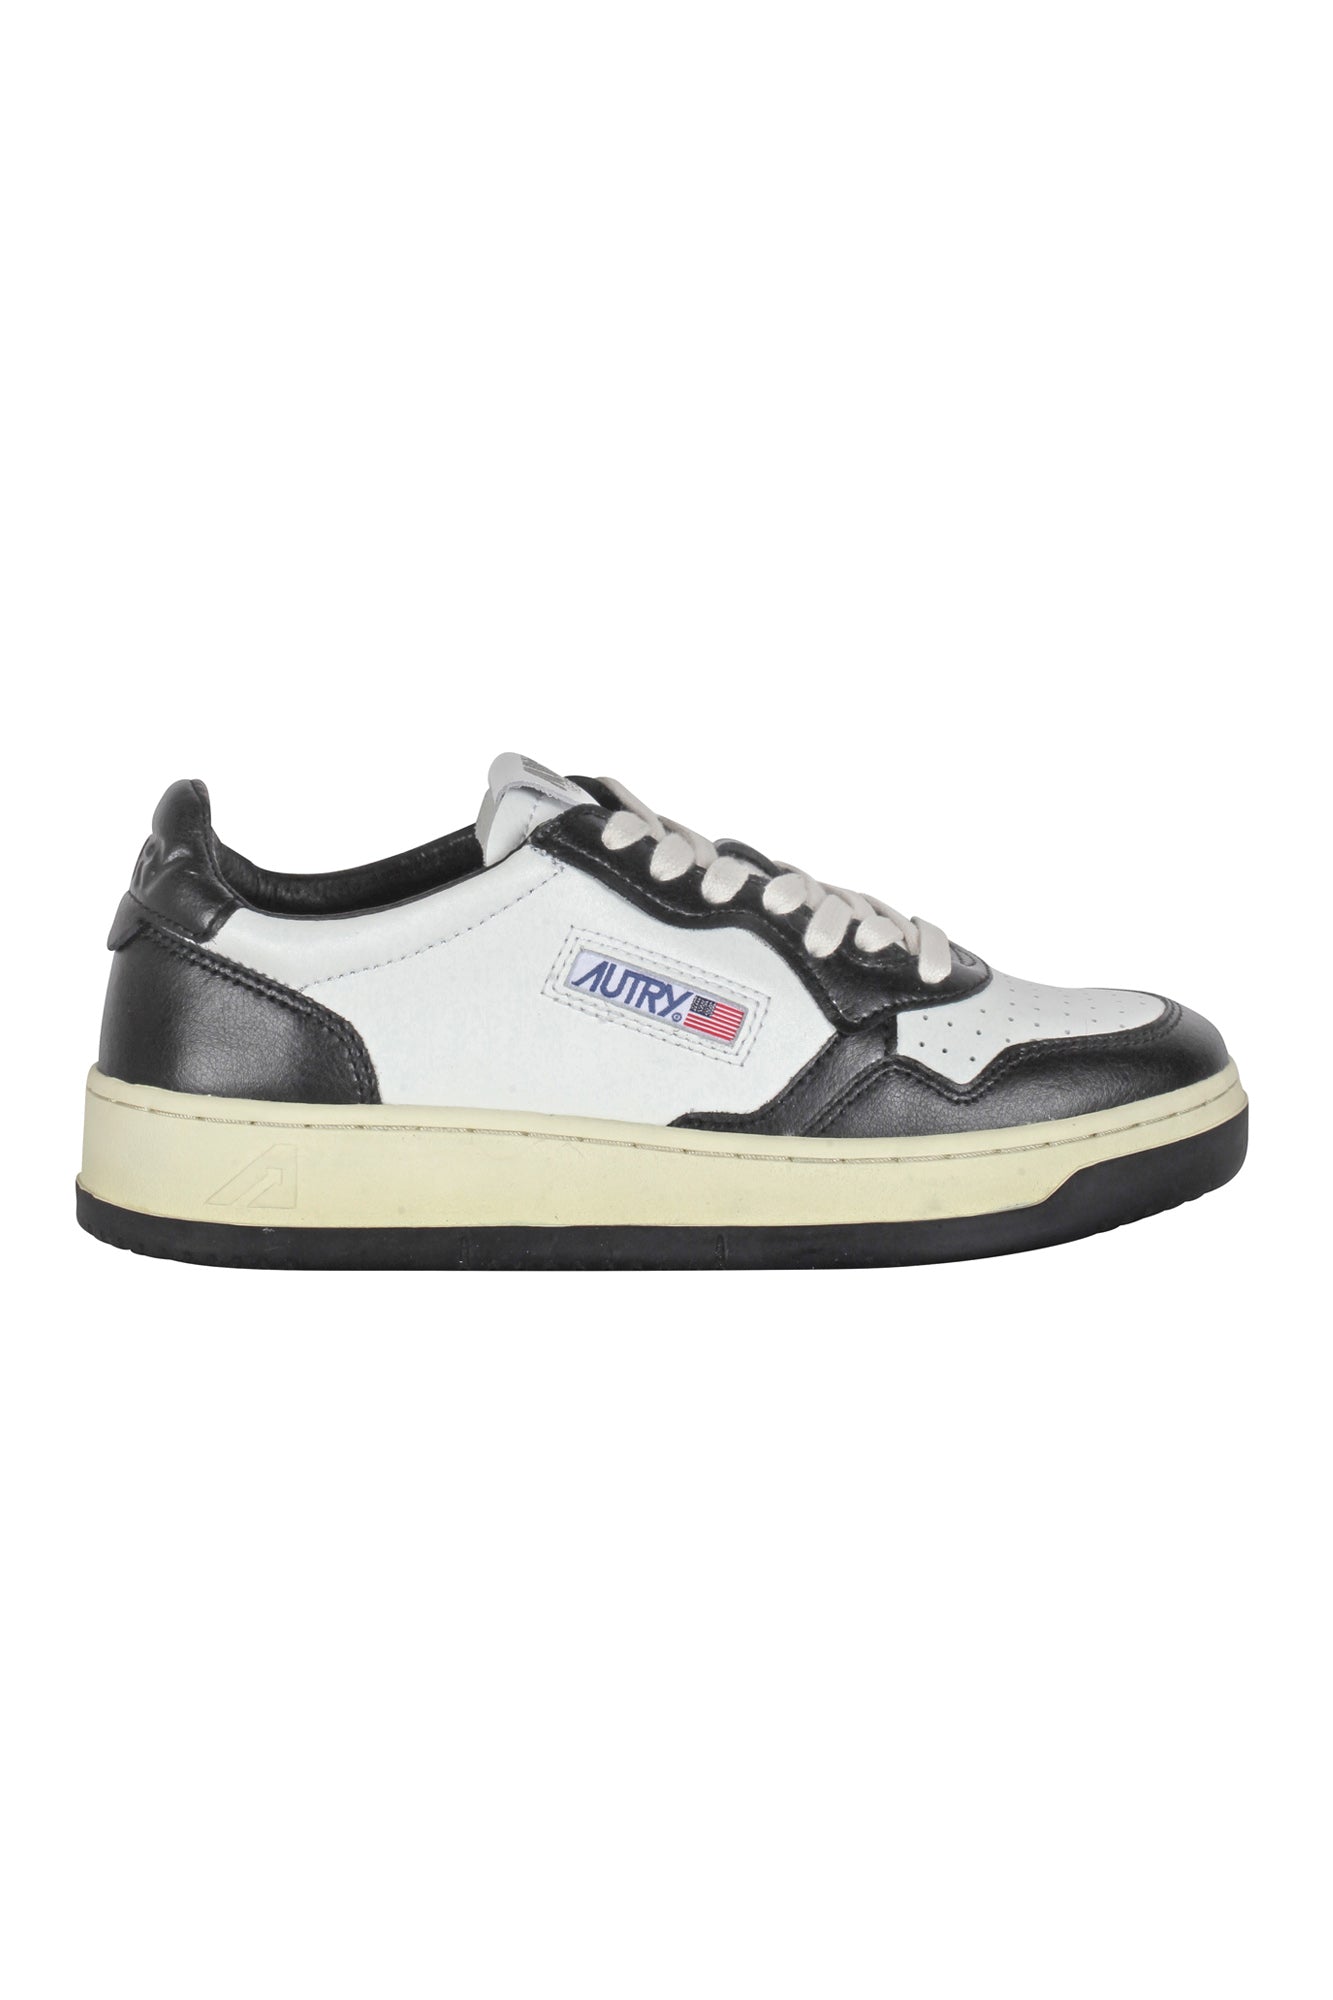 Autry - Sneakers - 430039 - Bianco/Nero